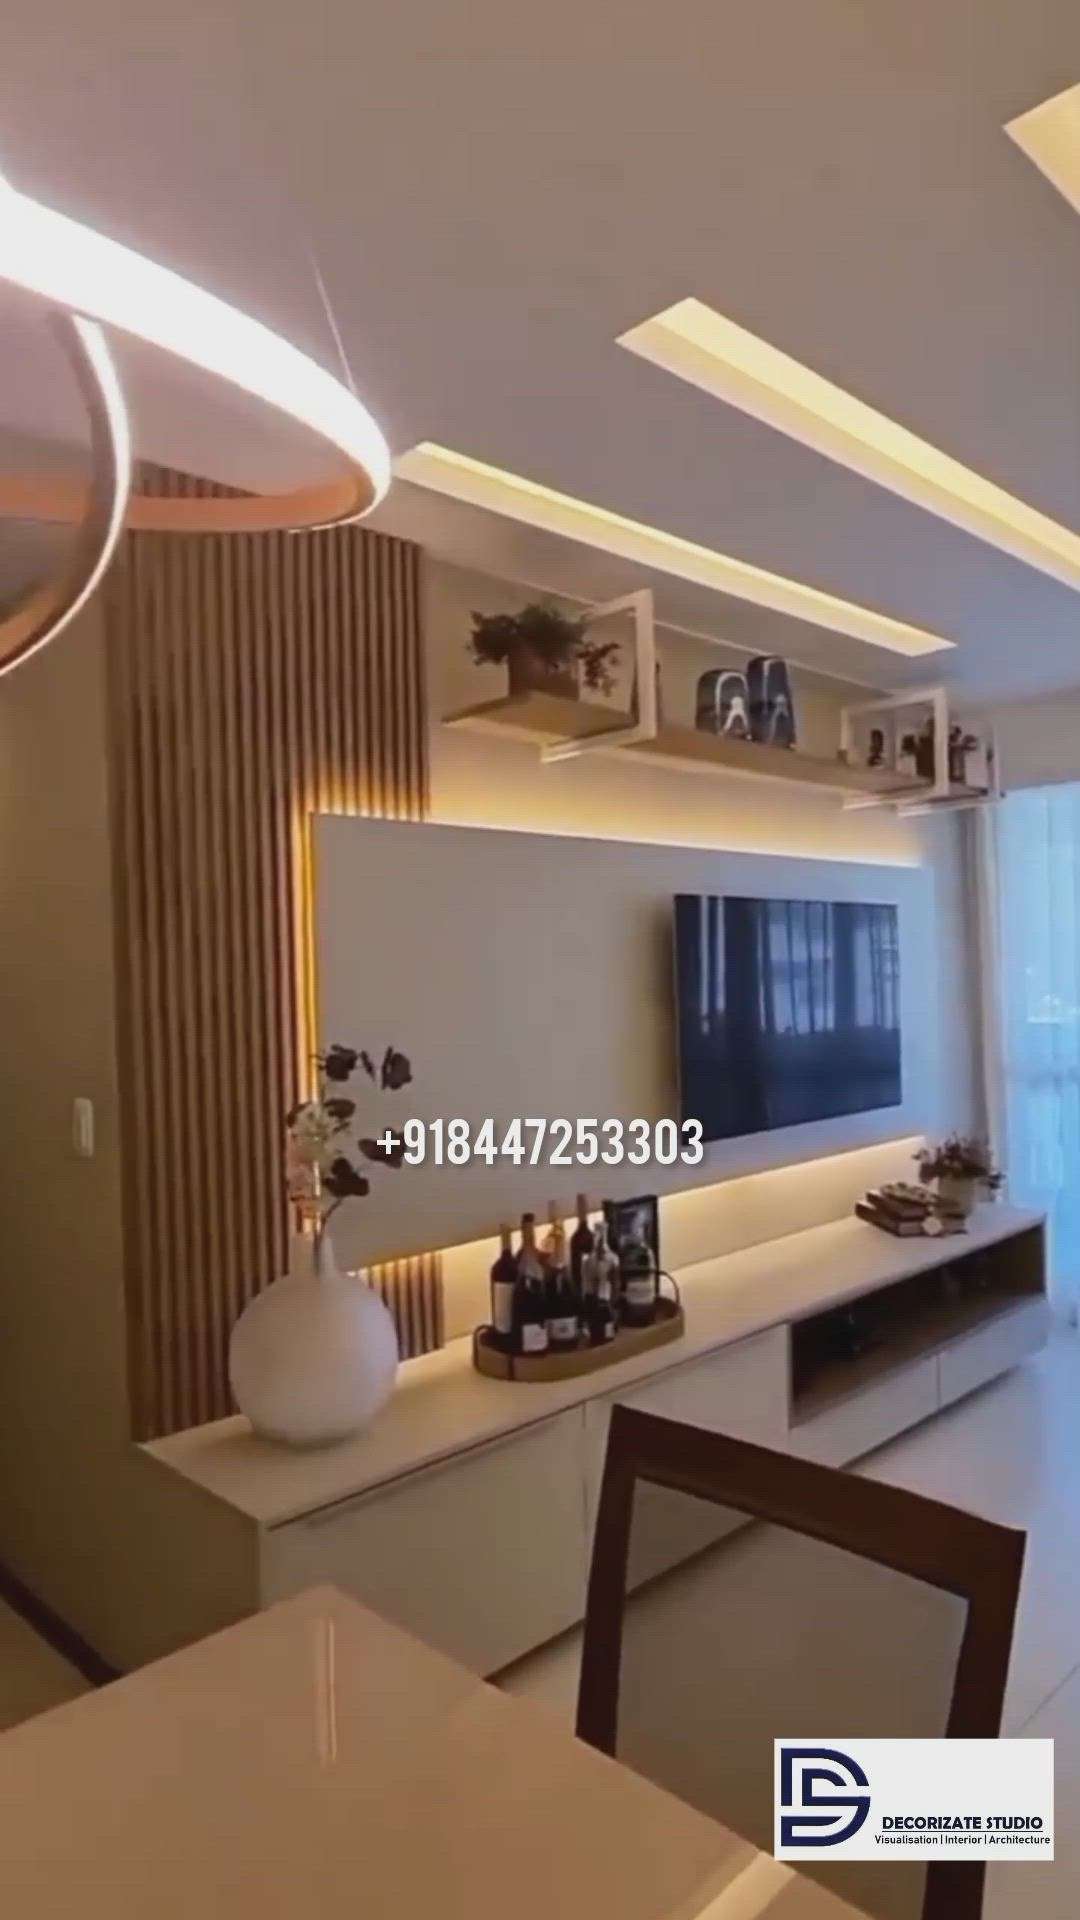 Home Decor Designs by 3D & CAD Decorizate studio, Delhi | Kolo